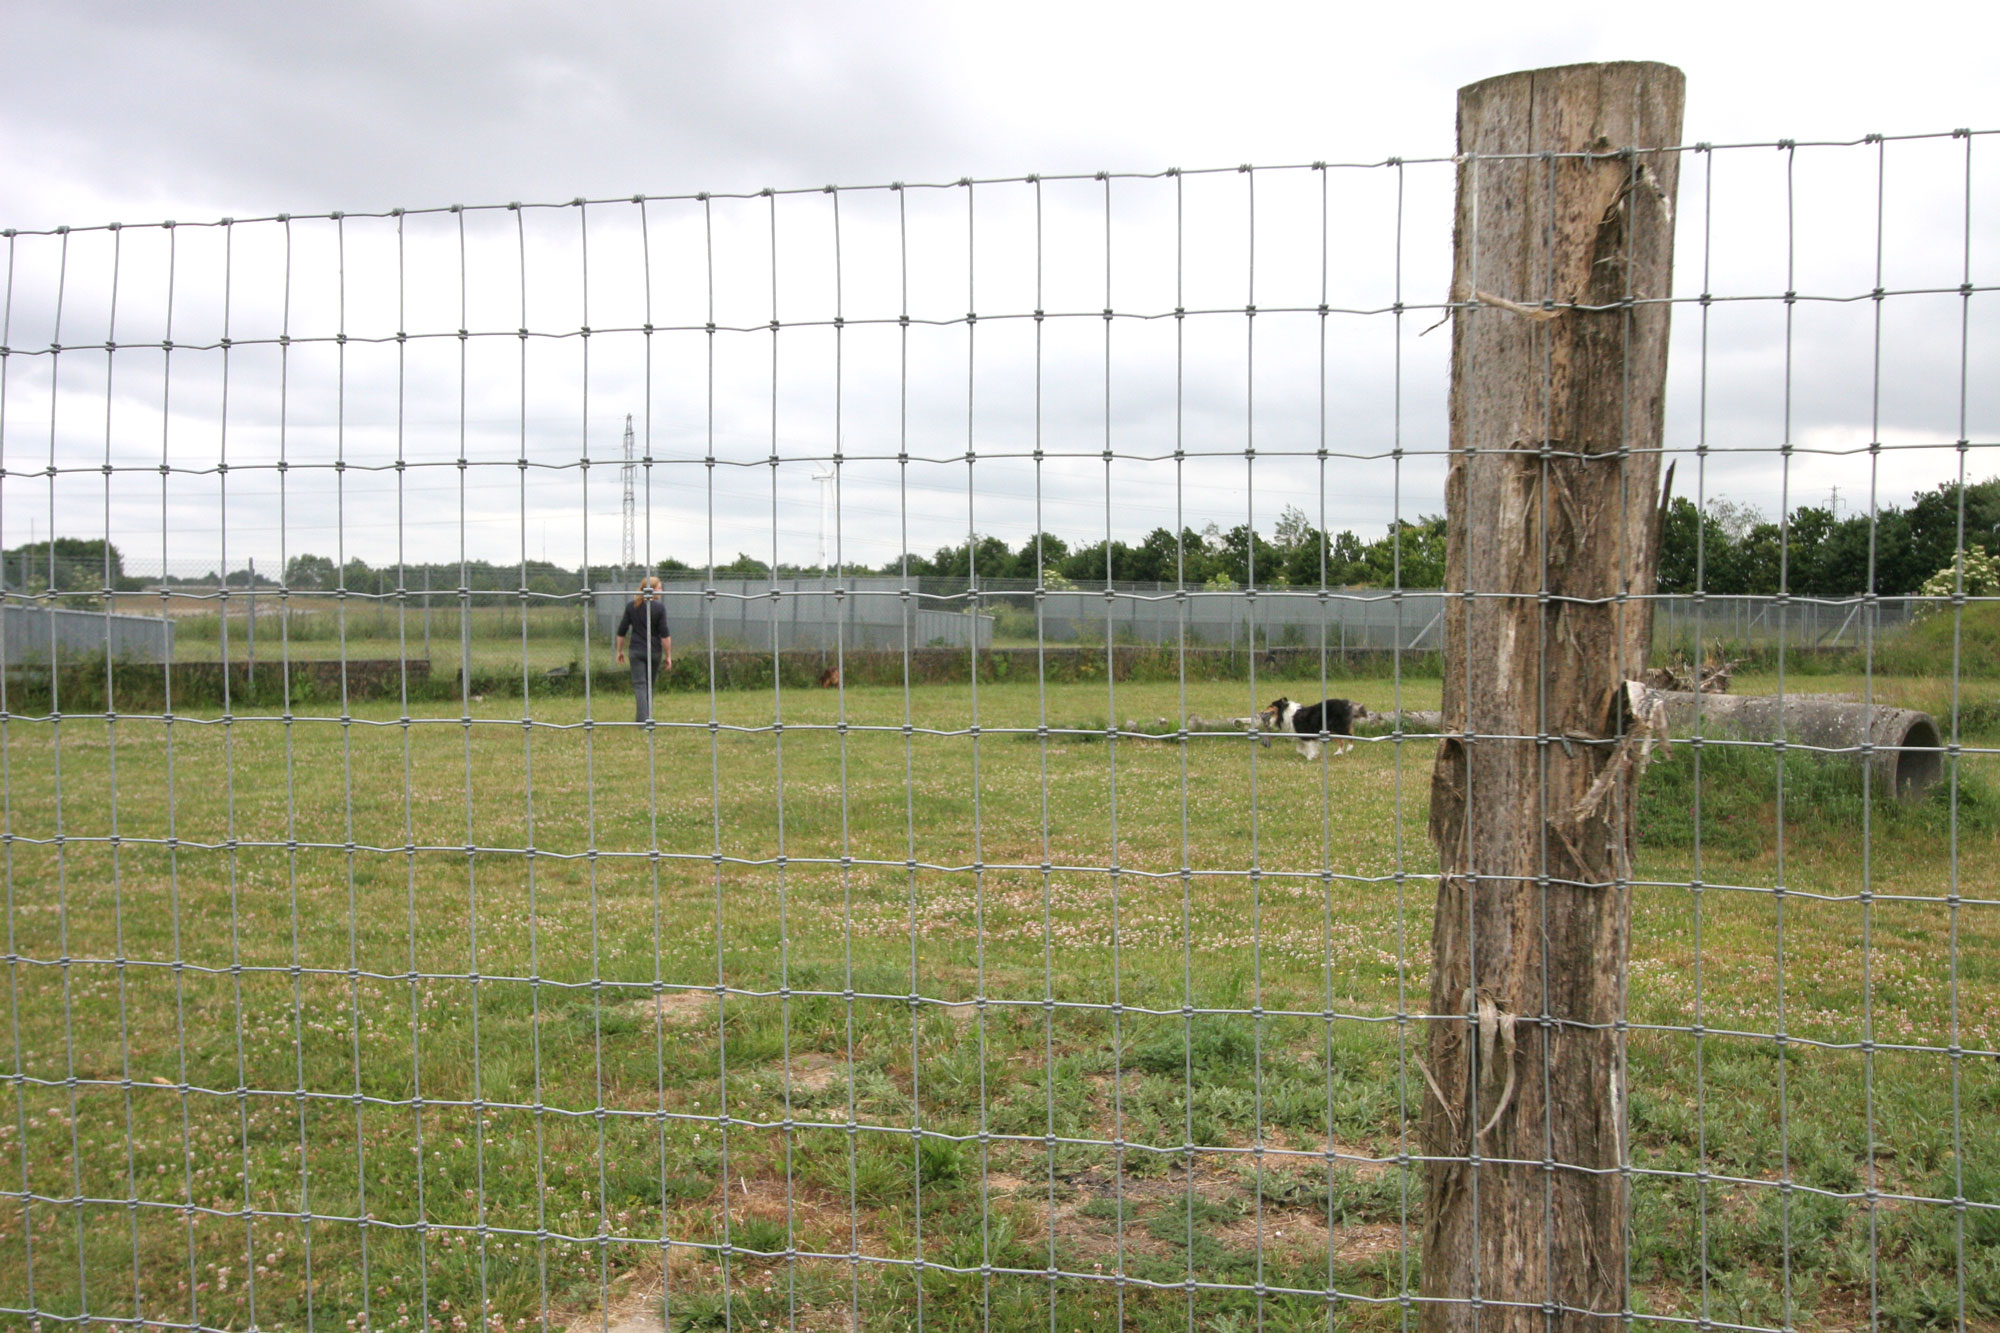 Ein hoher Zaun umgibt einen Auslauf, in dem ein Hund und ein Mensch herumlaufen.